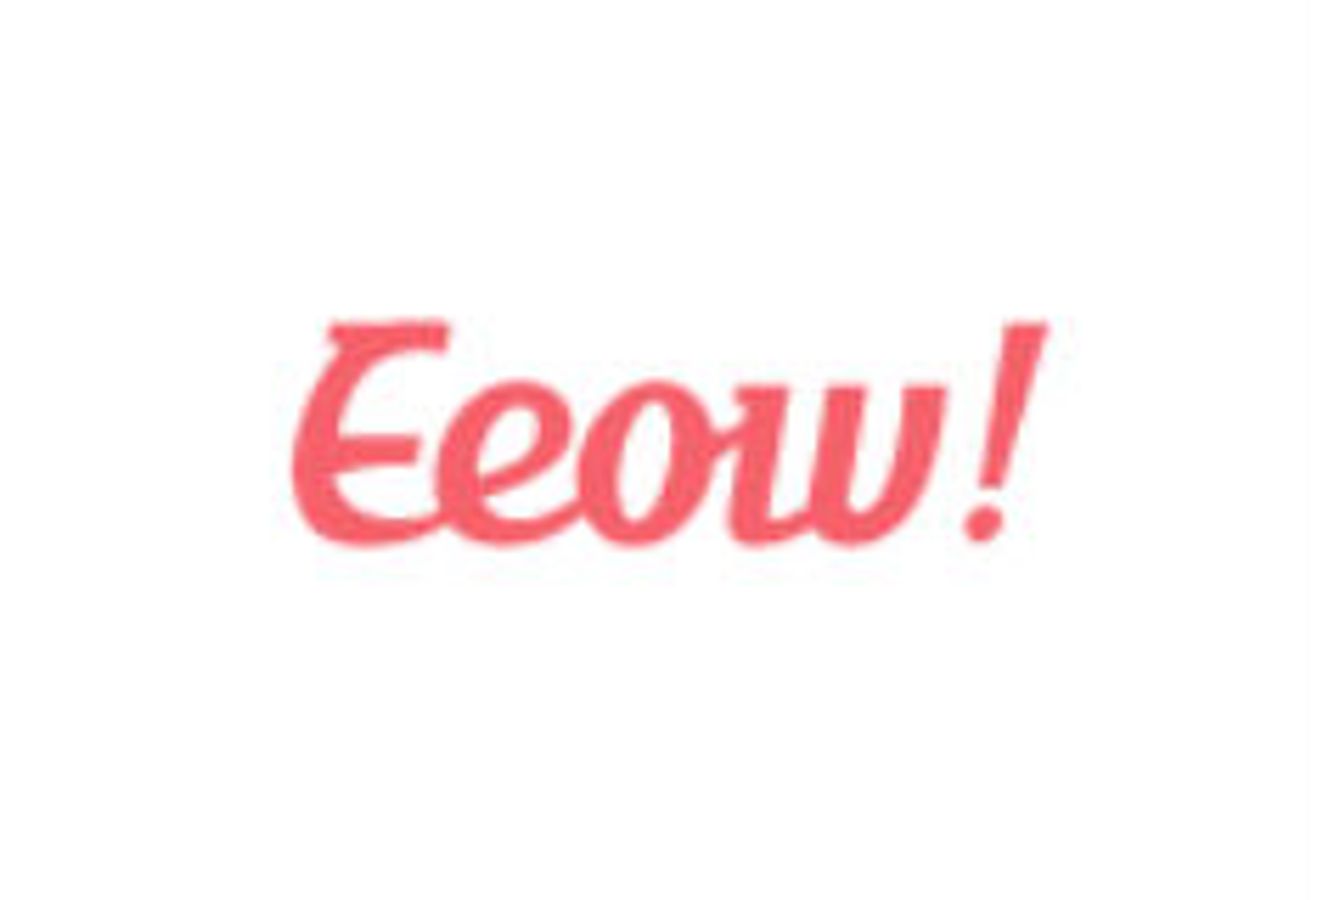 EEOW.com